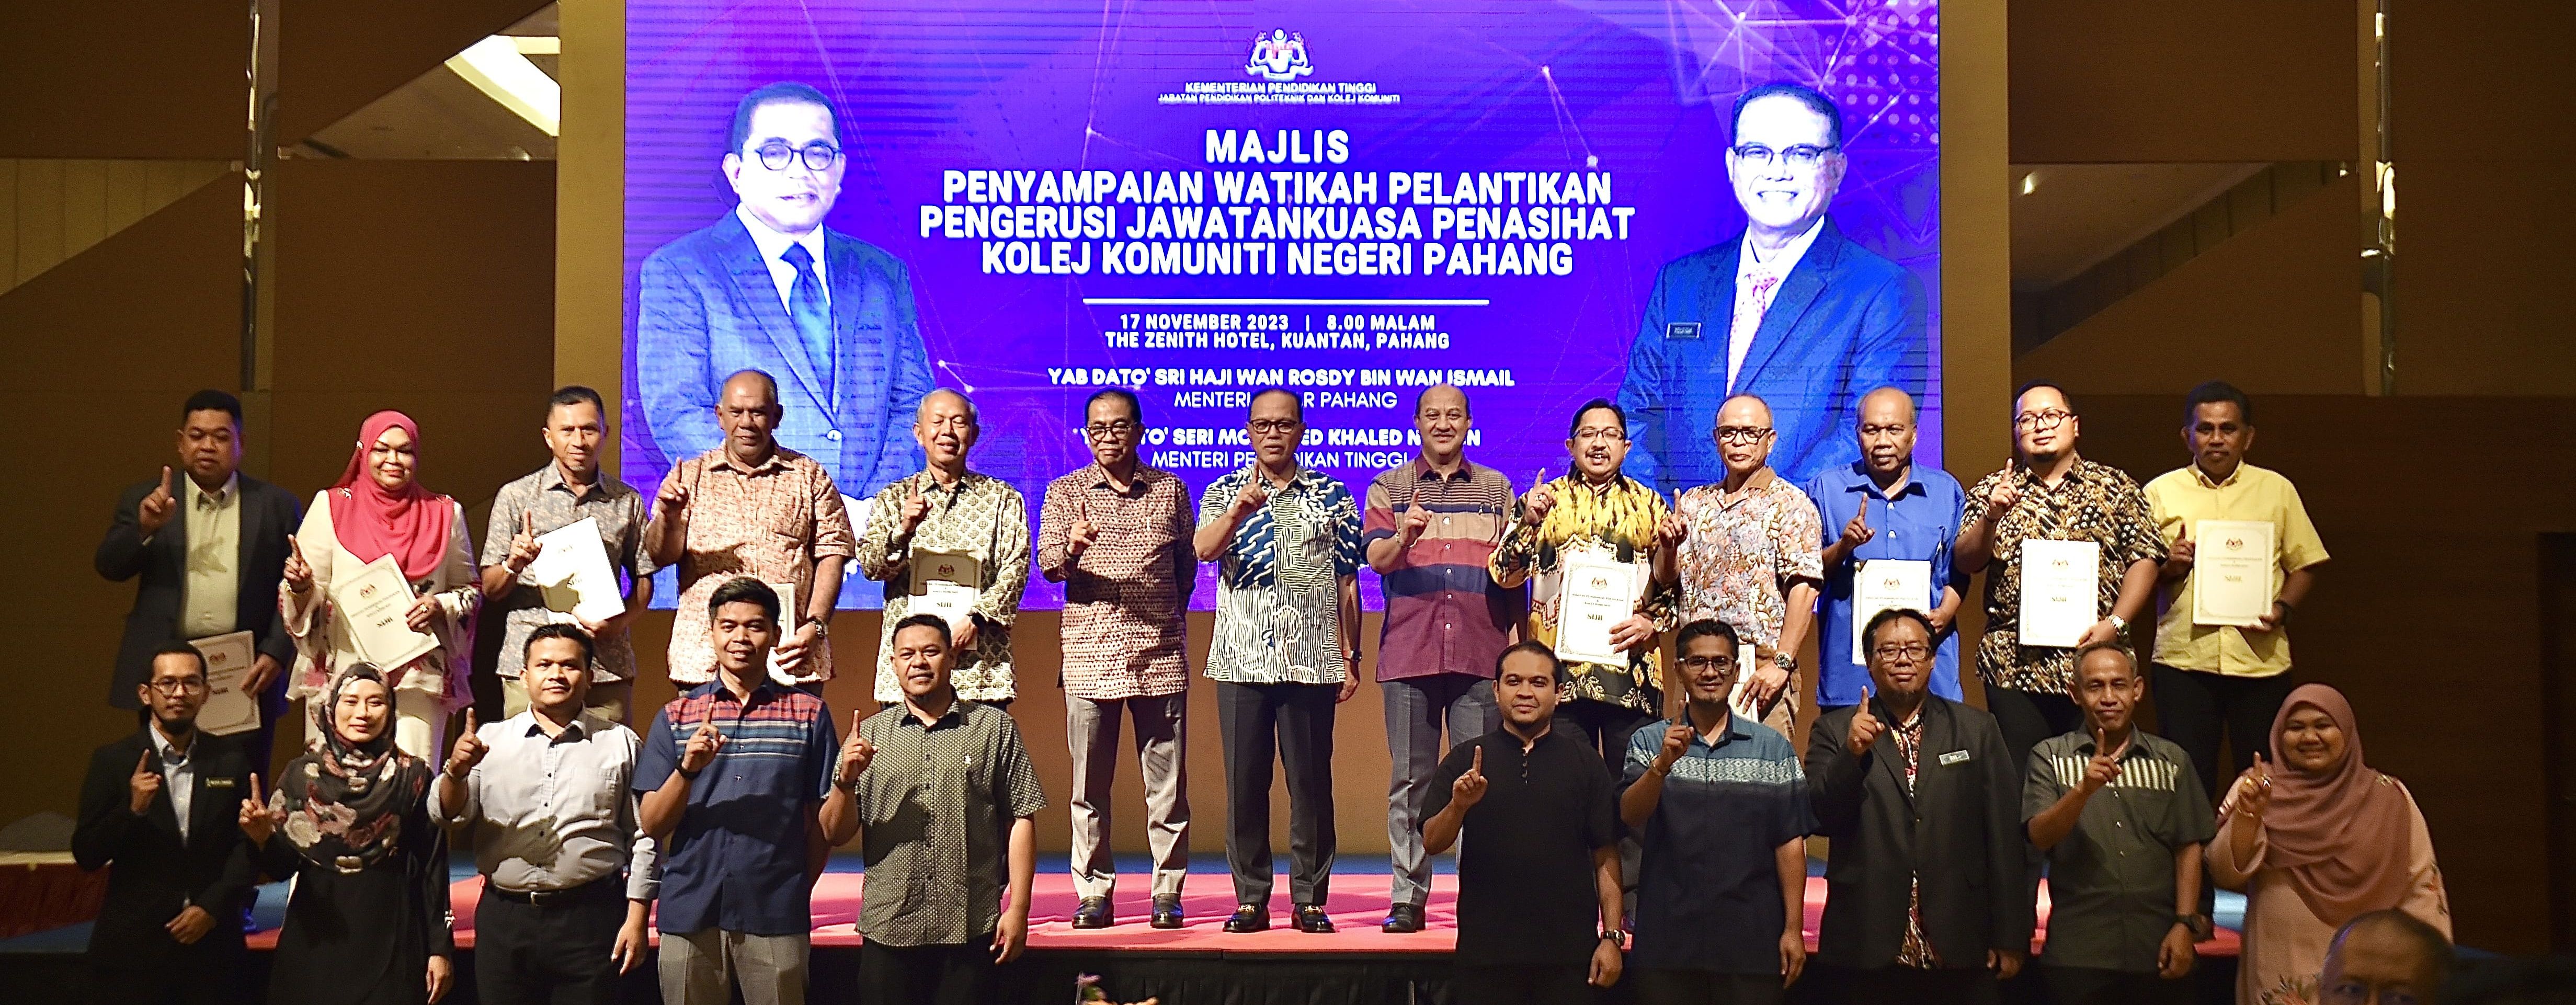 10 Pemimpin Masyarakat Pahang Terima Watikah Pelantikan Pengerusi Jawatankuasa Penasihat Kolej Komuniti